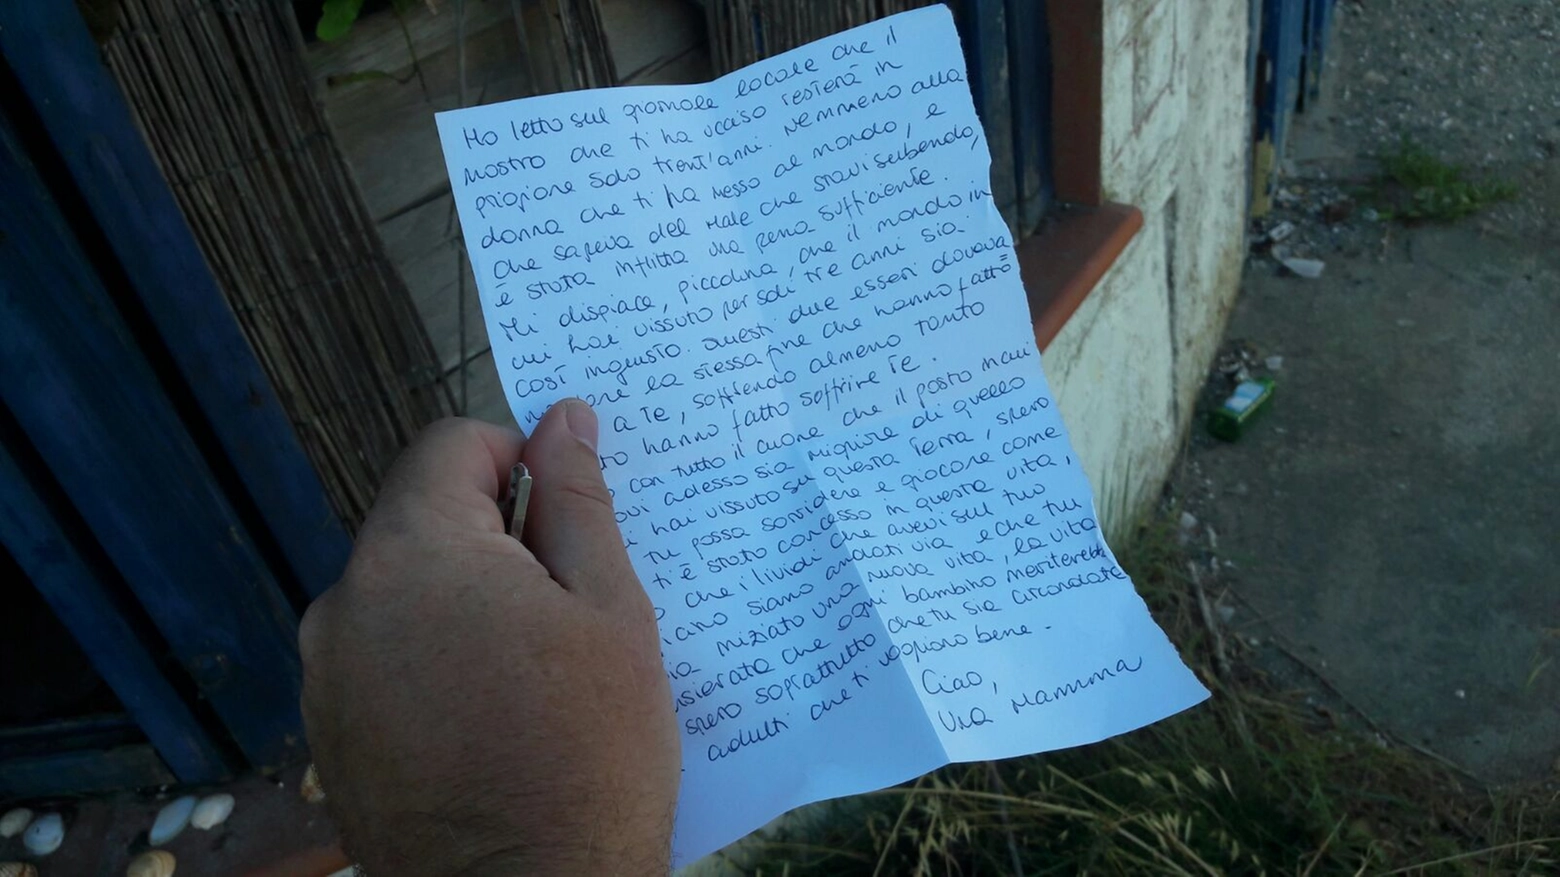 La lettera lasciata nella baracca dove è stata trovata morta la piccola Samantha